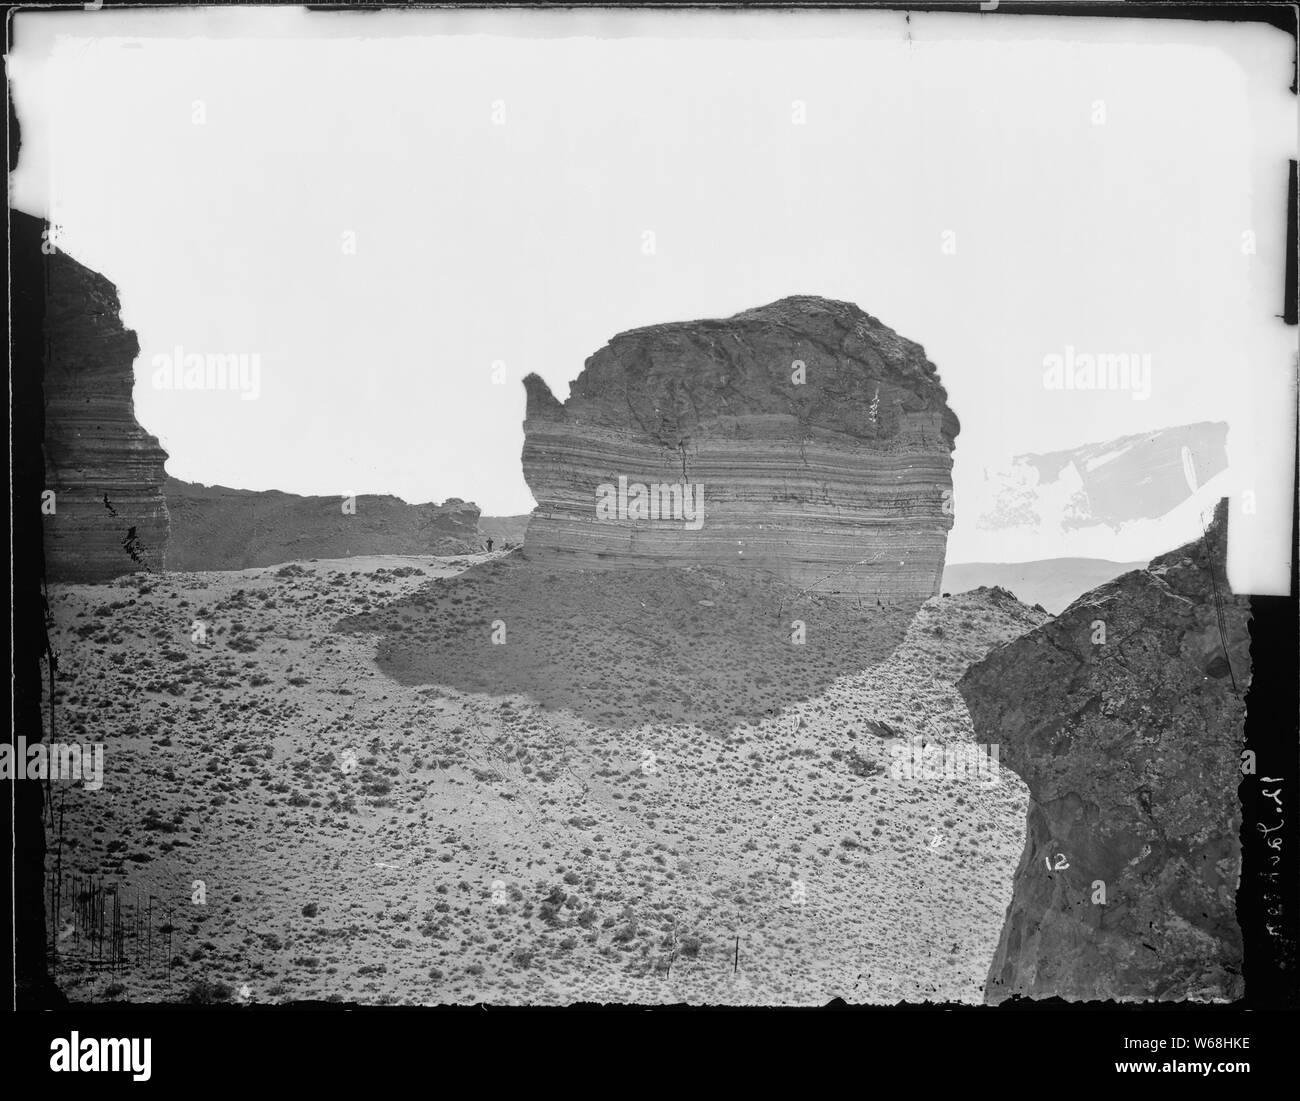 Teekanne Rock, in der Nähe von Green River Station. Sweetwater County, Wyoming. Kleine Abbildung des Menschen am Fuß des Auswurfkrümmers gibt einen Hinweis auf die Größe des Rock. Stockfoto